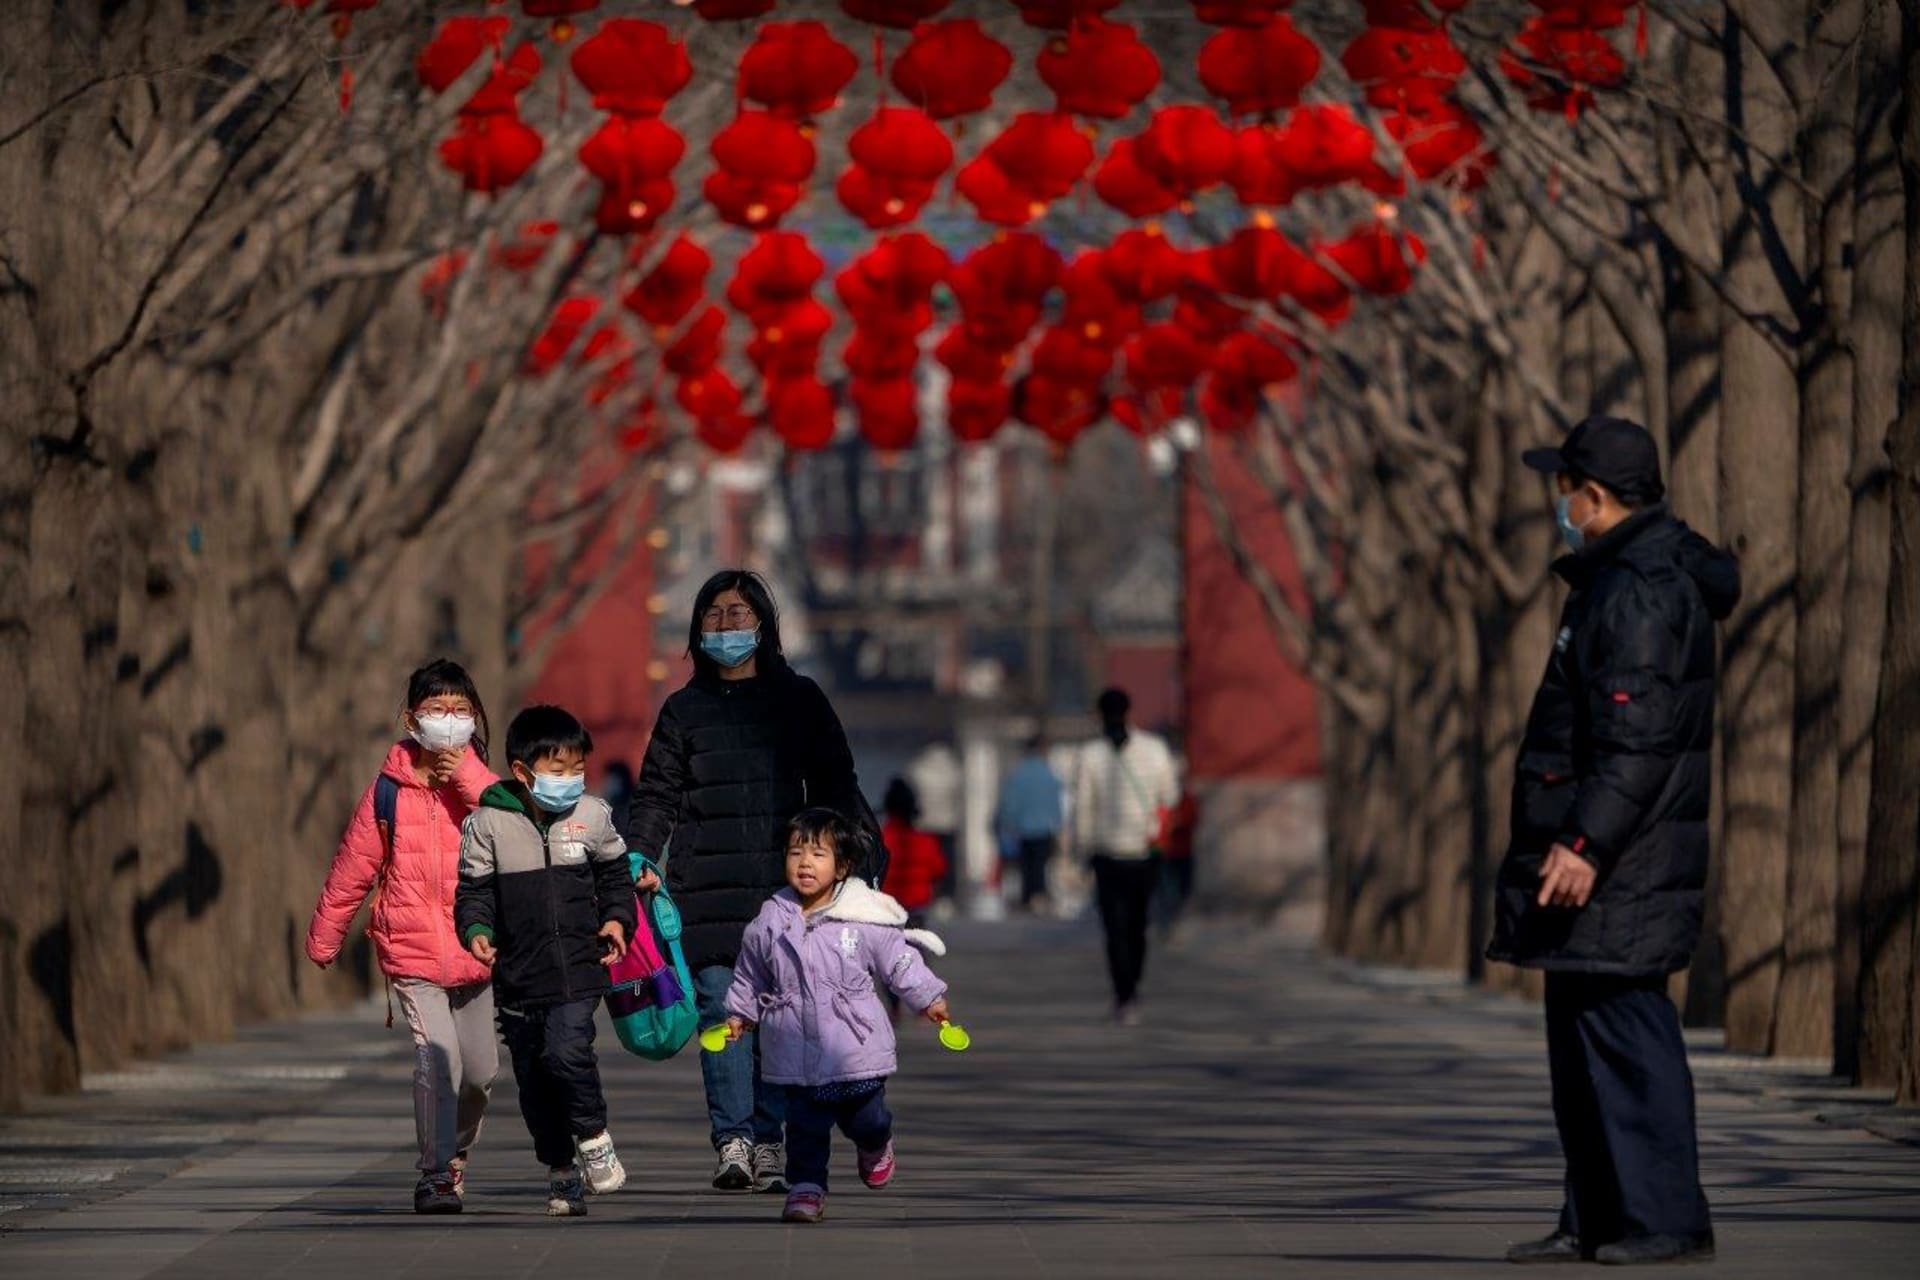 Tato pekingská rodina má štěstí, svátky stráví společně